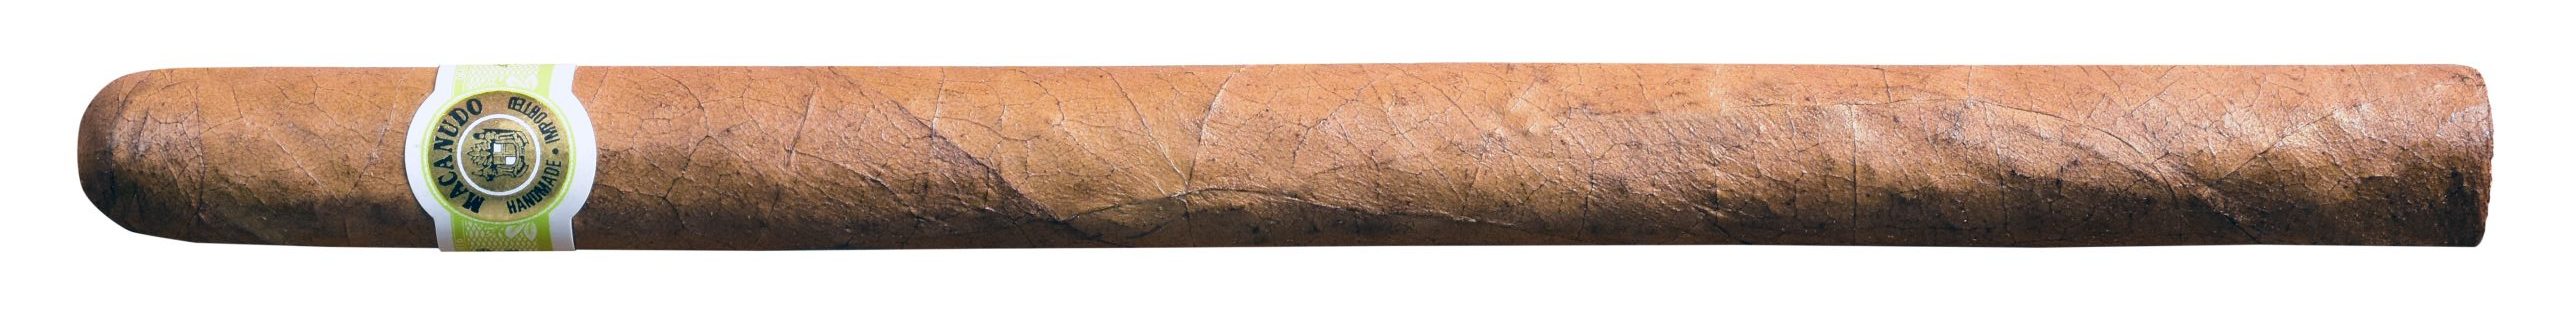 macanudo portofino single cigar